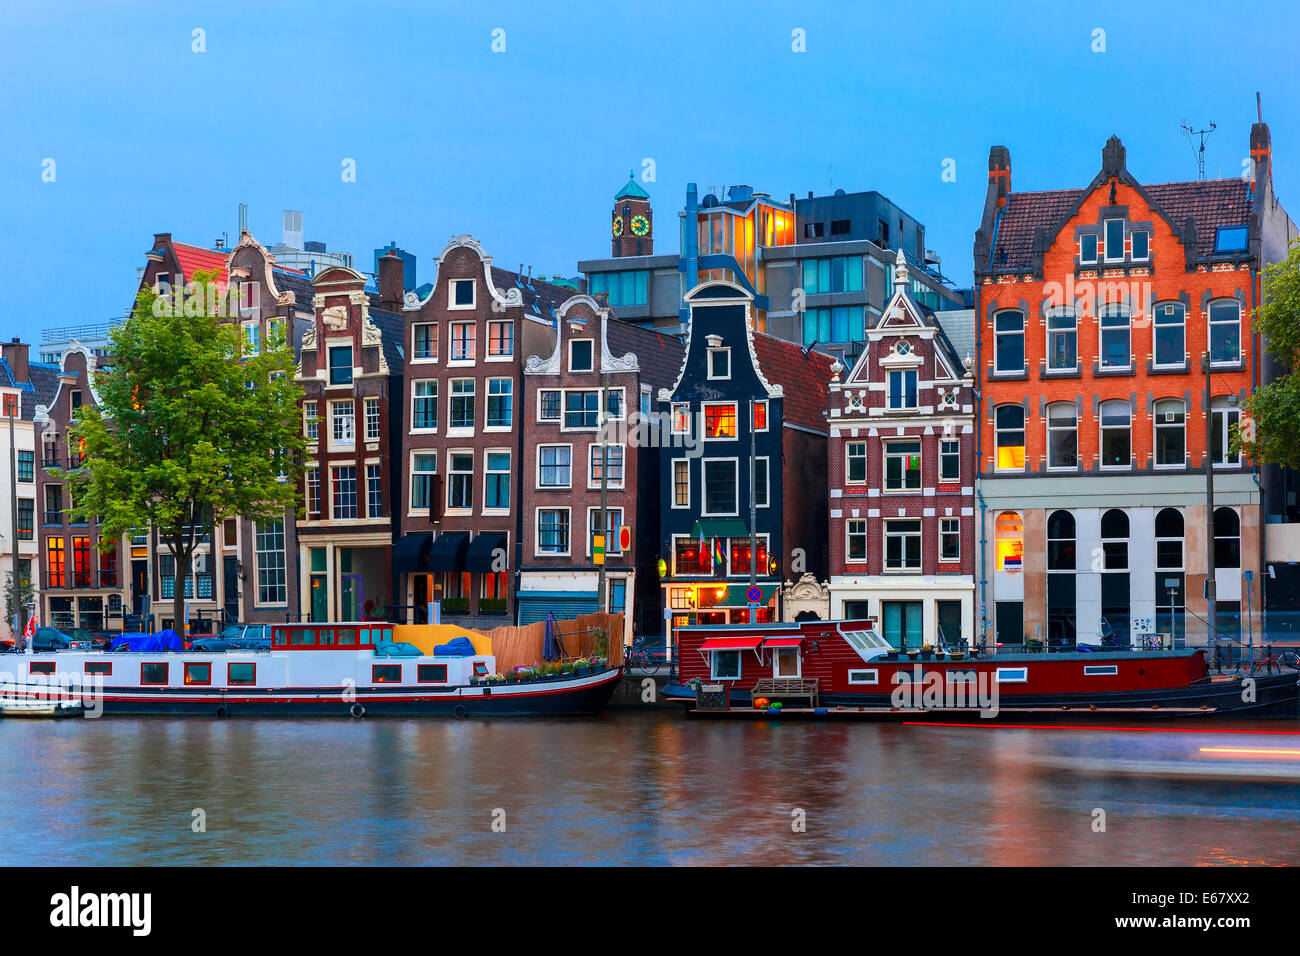 Nuit vue sur la ville d'Amsterdam canal, maisons et bateaux hollandais typique, en Hollande, aux Pays-Bas. Banque D'Images